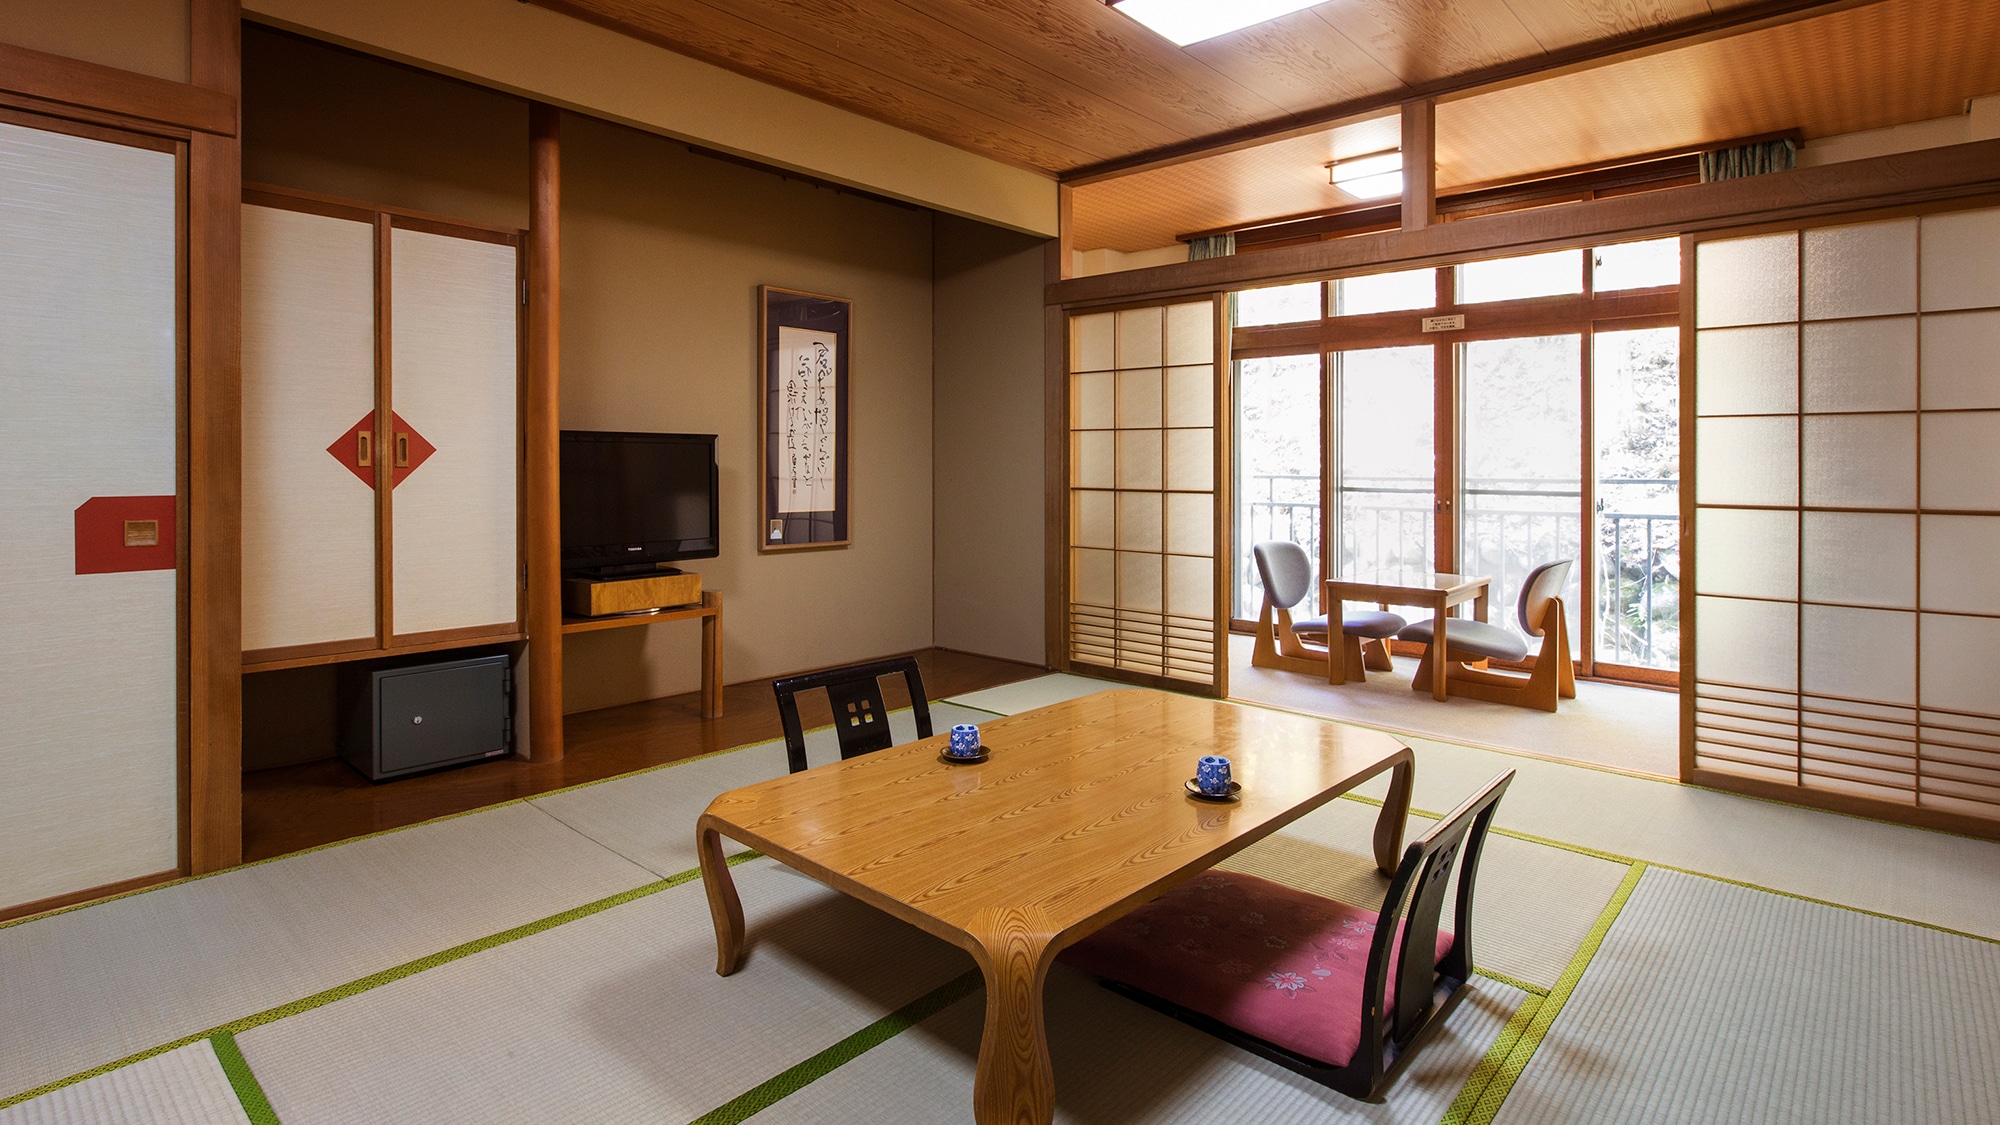 [ห้องสไตล์ญี่ปุ่น] ห้องสไตล์ญี่ปุ่นที่ธรรมชาติของคิตะยูซาวะแผ่ออกไปทางหน้าต่างเป็นเสื่อทาทามิ 12 ผืน คุณจึงสามารถพักผ่อนและผ่อนคลายได้